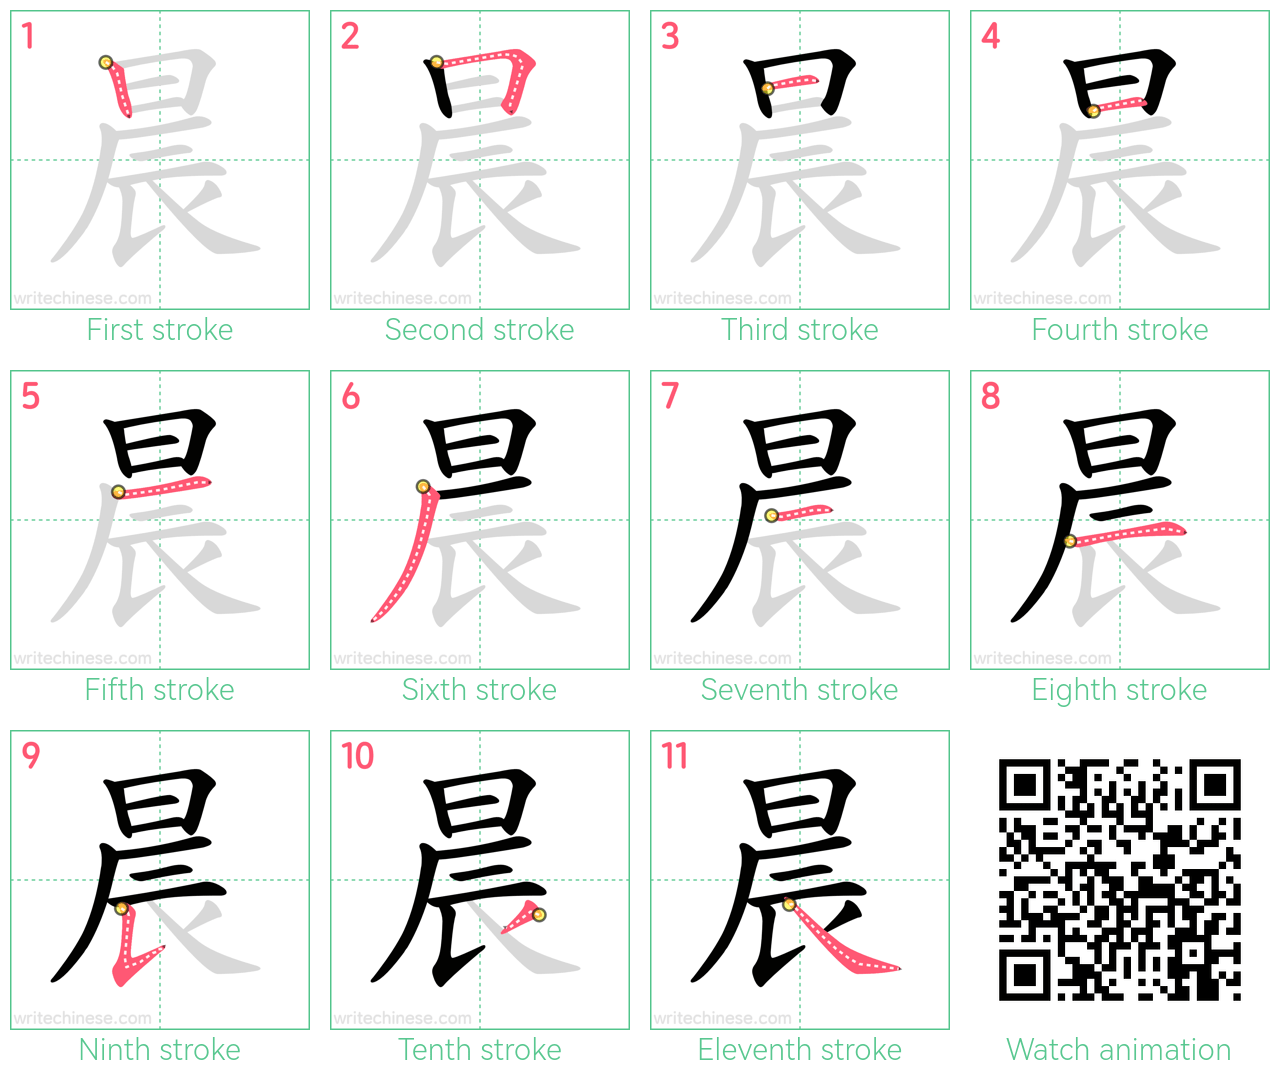 晨 step-by-step stroke order diagrams